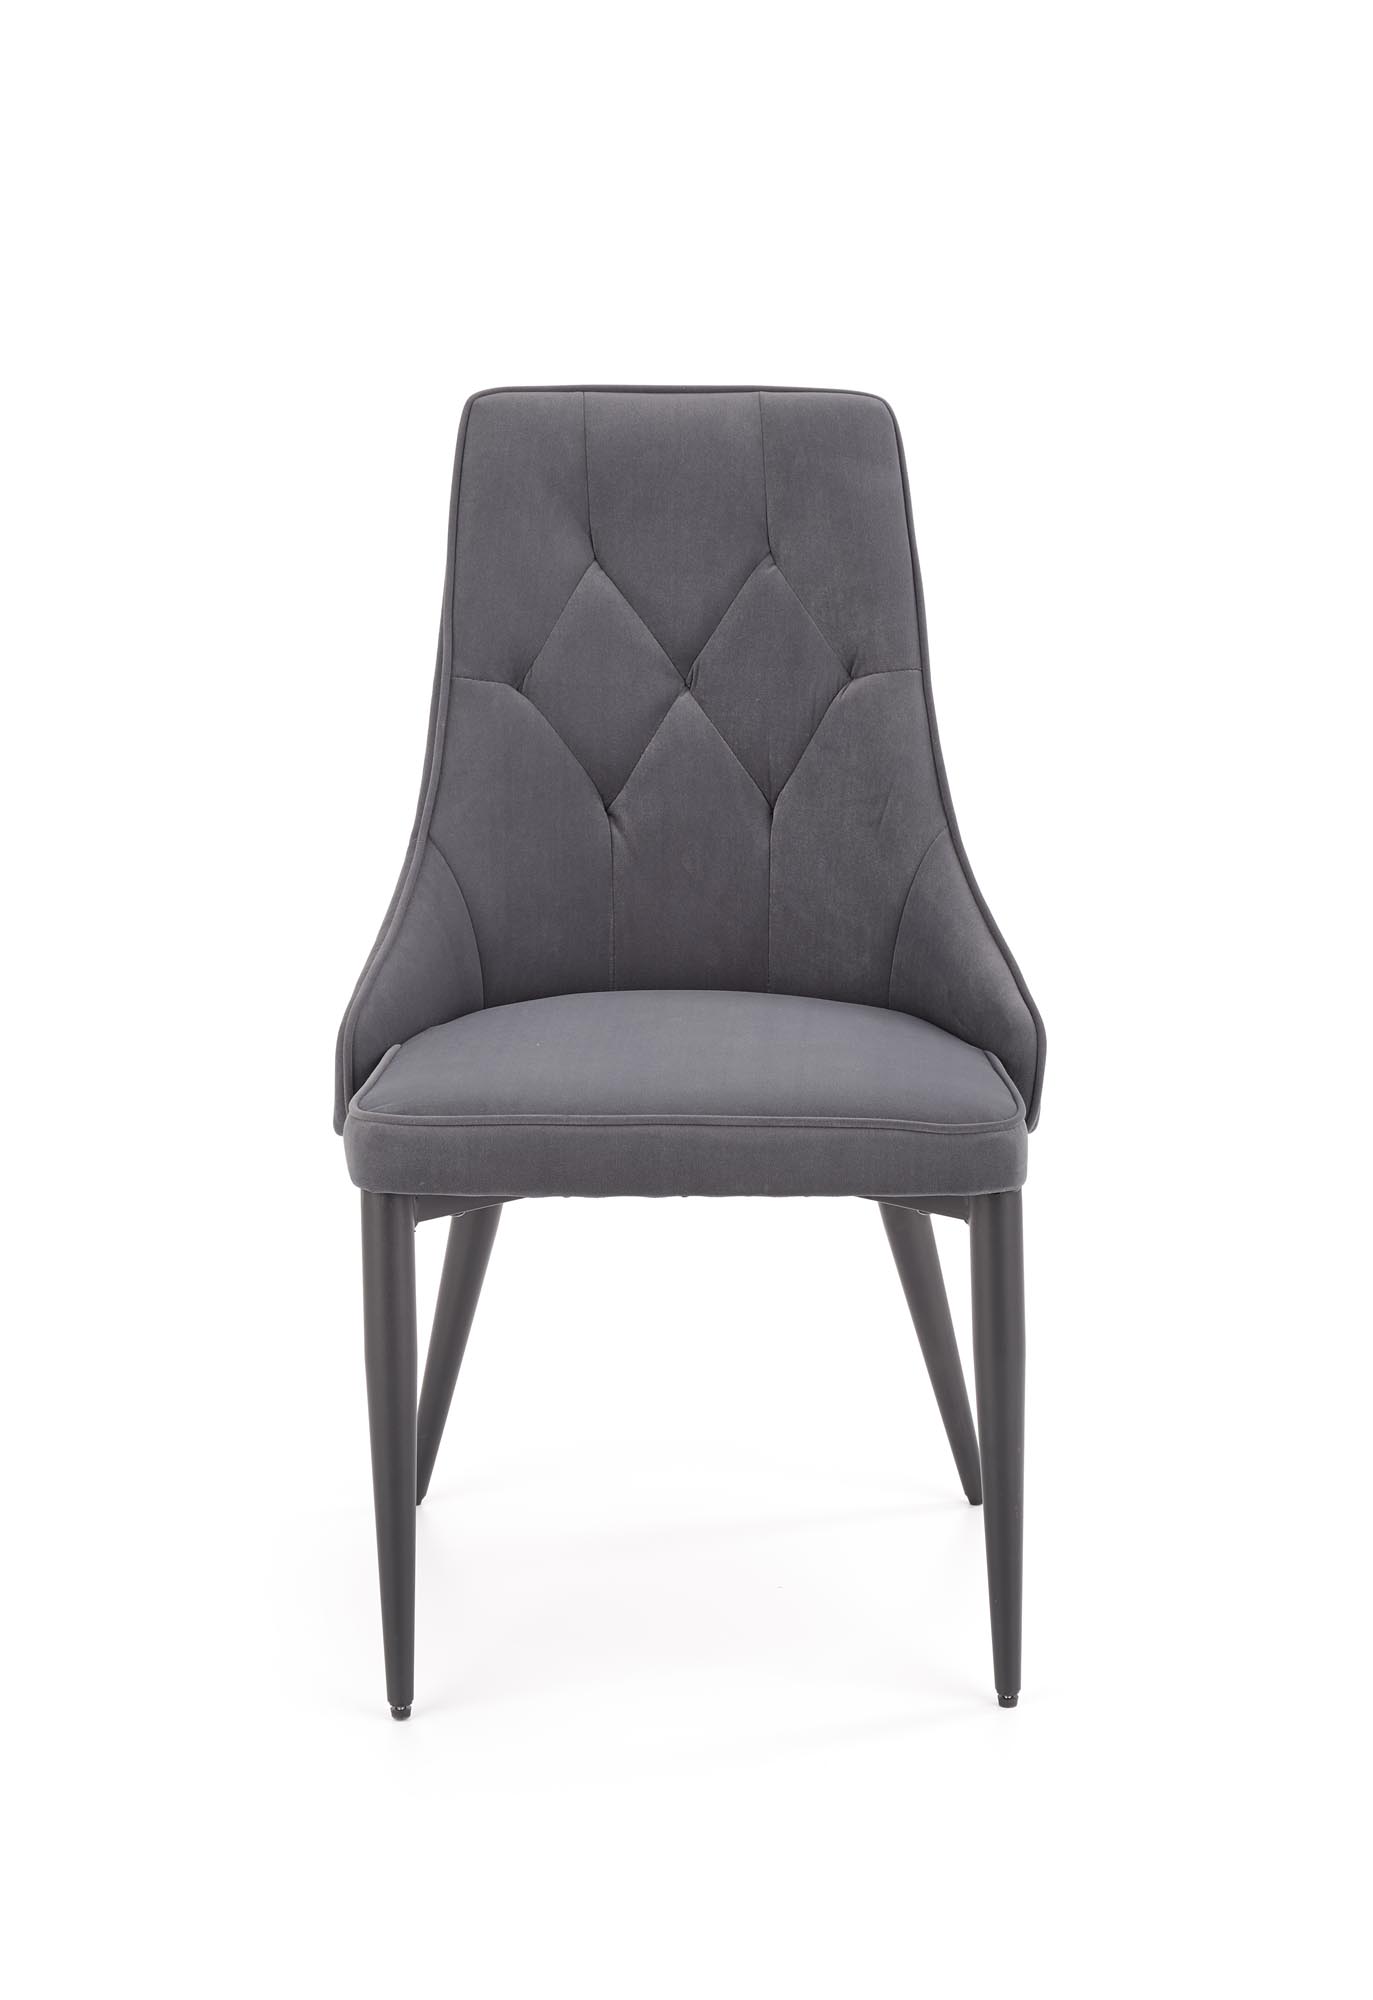 Krzeszło tapicerowane K365 - popiel popielate tapicerowane krzesło